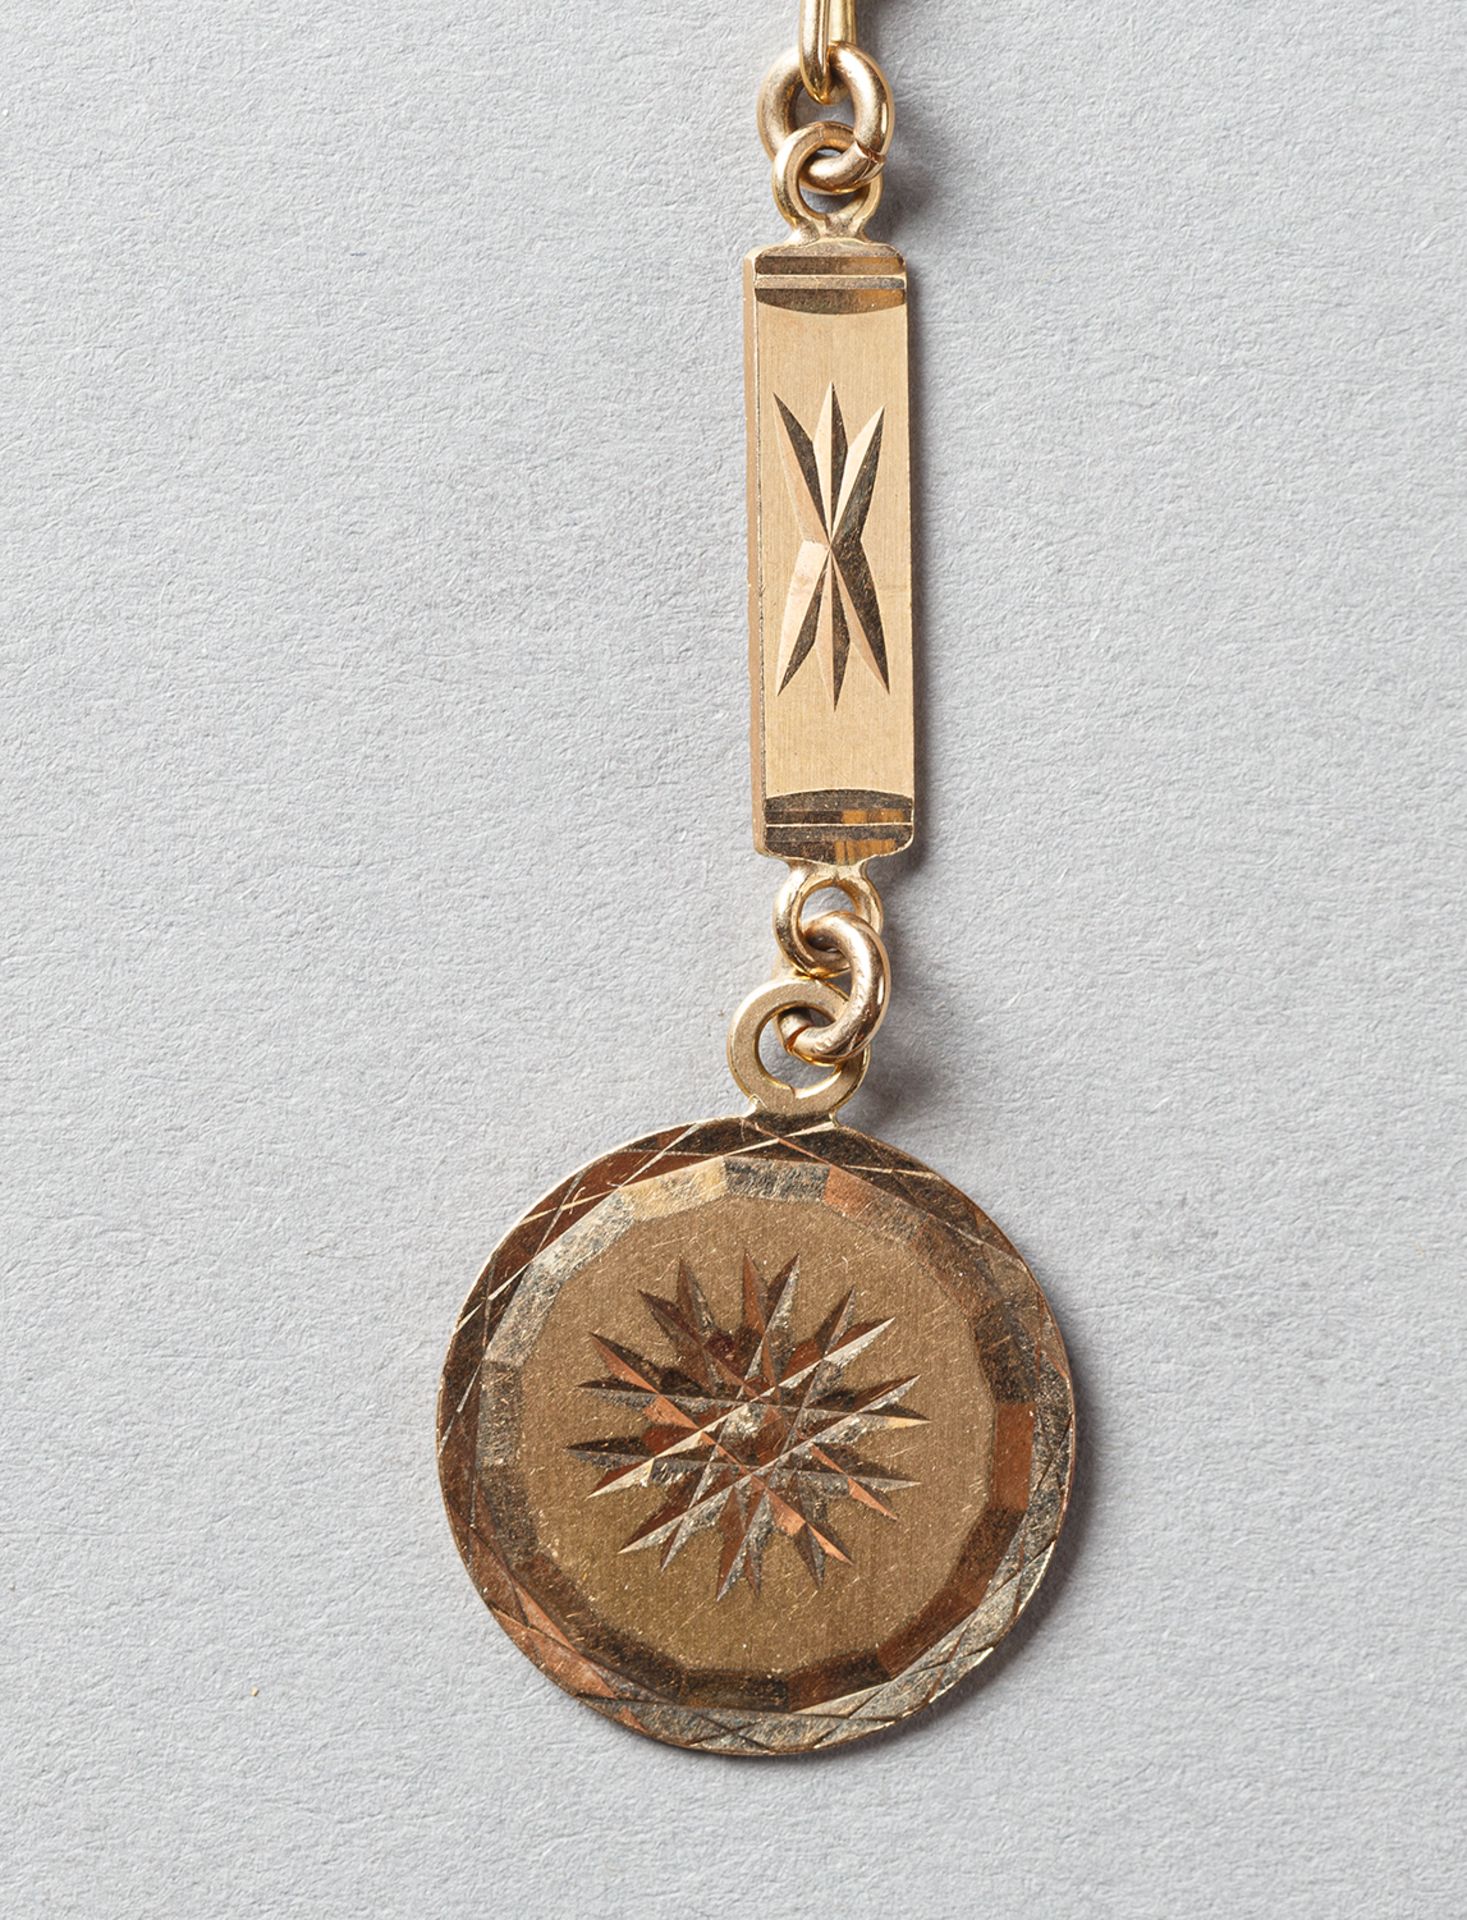 Goldener Schlüsselanhänger mit Monogramm "LG". 18 ct. Roségold, 10,7 g. L 12 cm